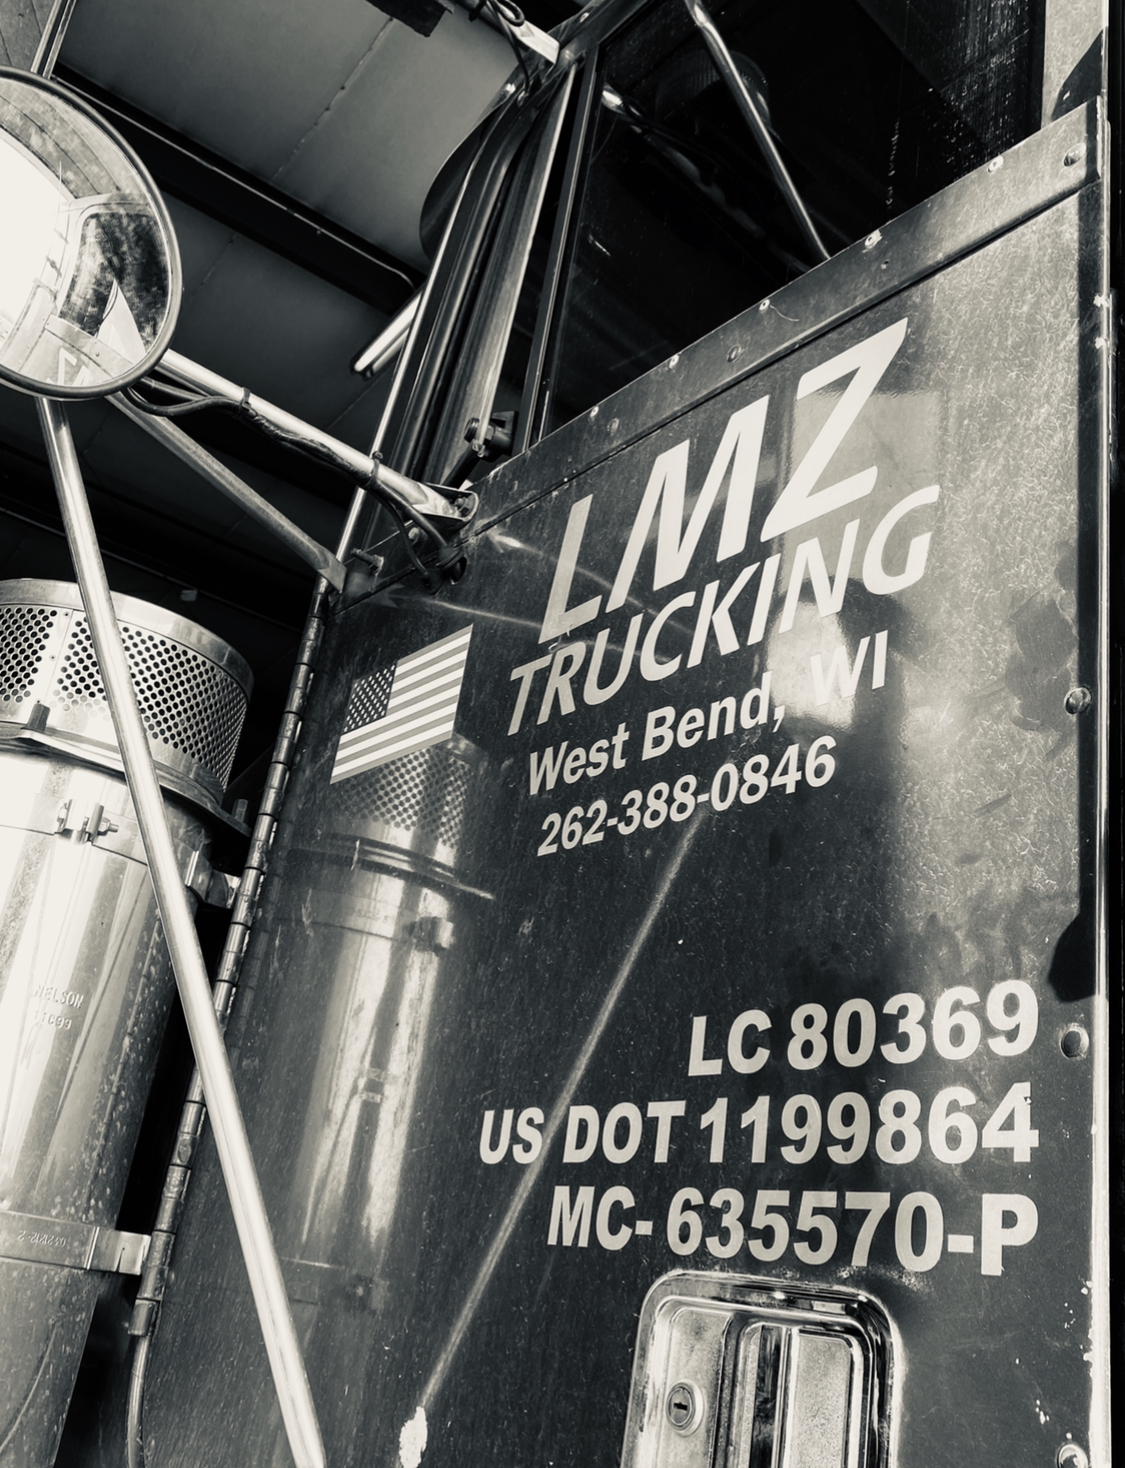 LMZ Trucking LLC